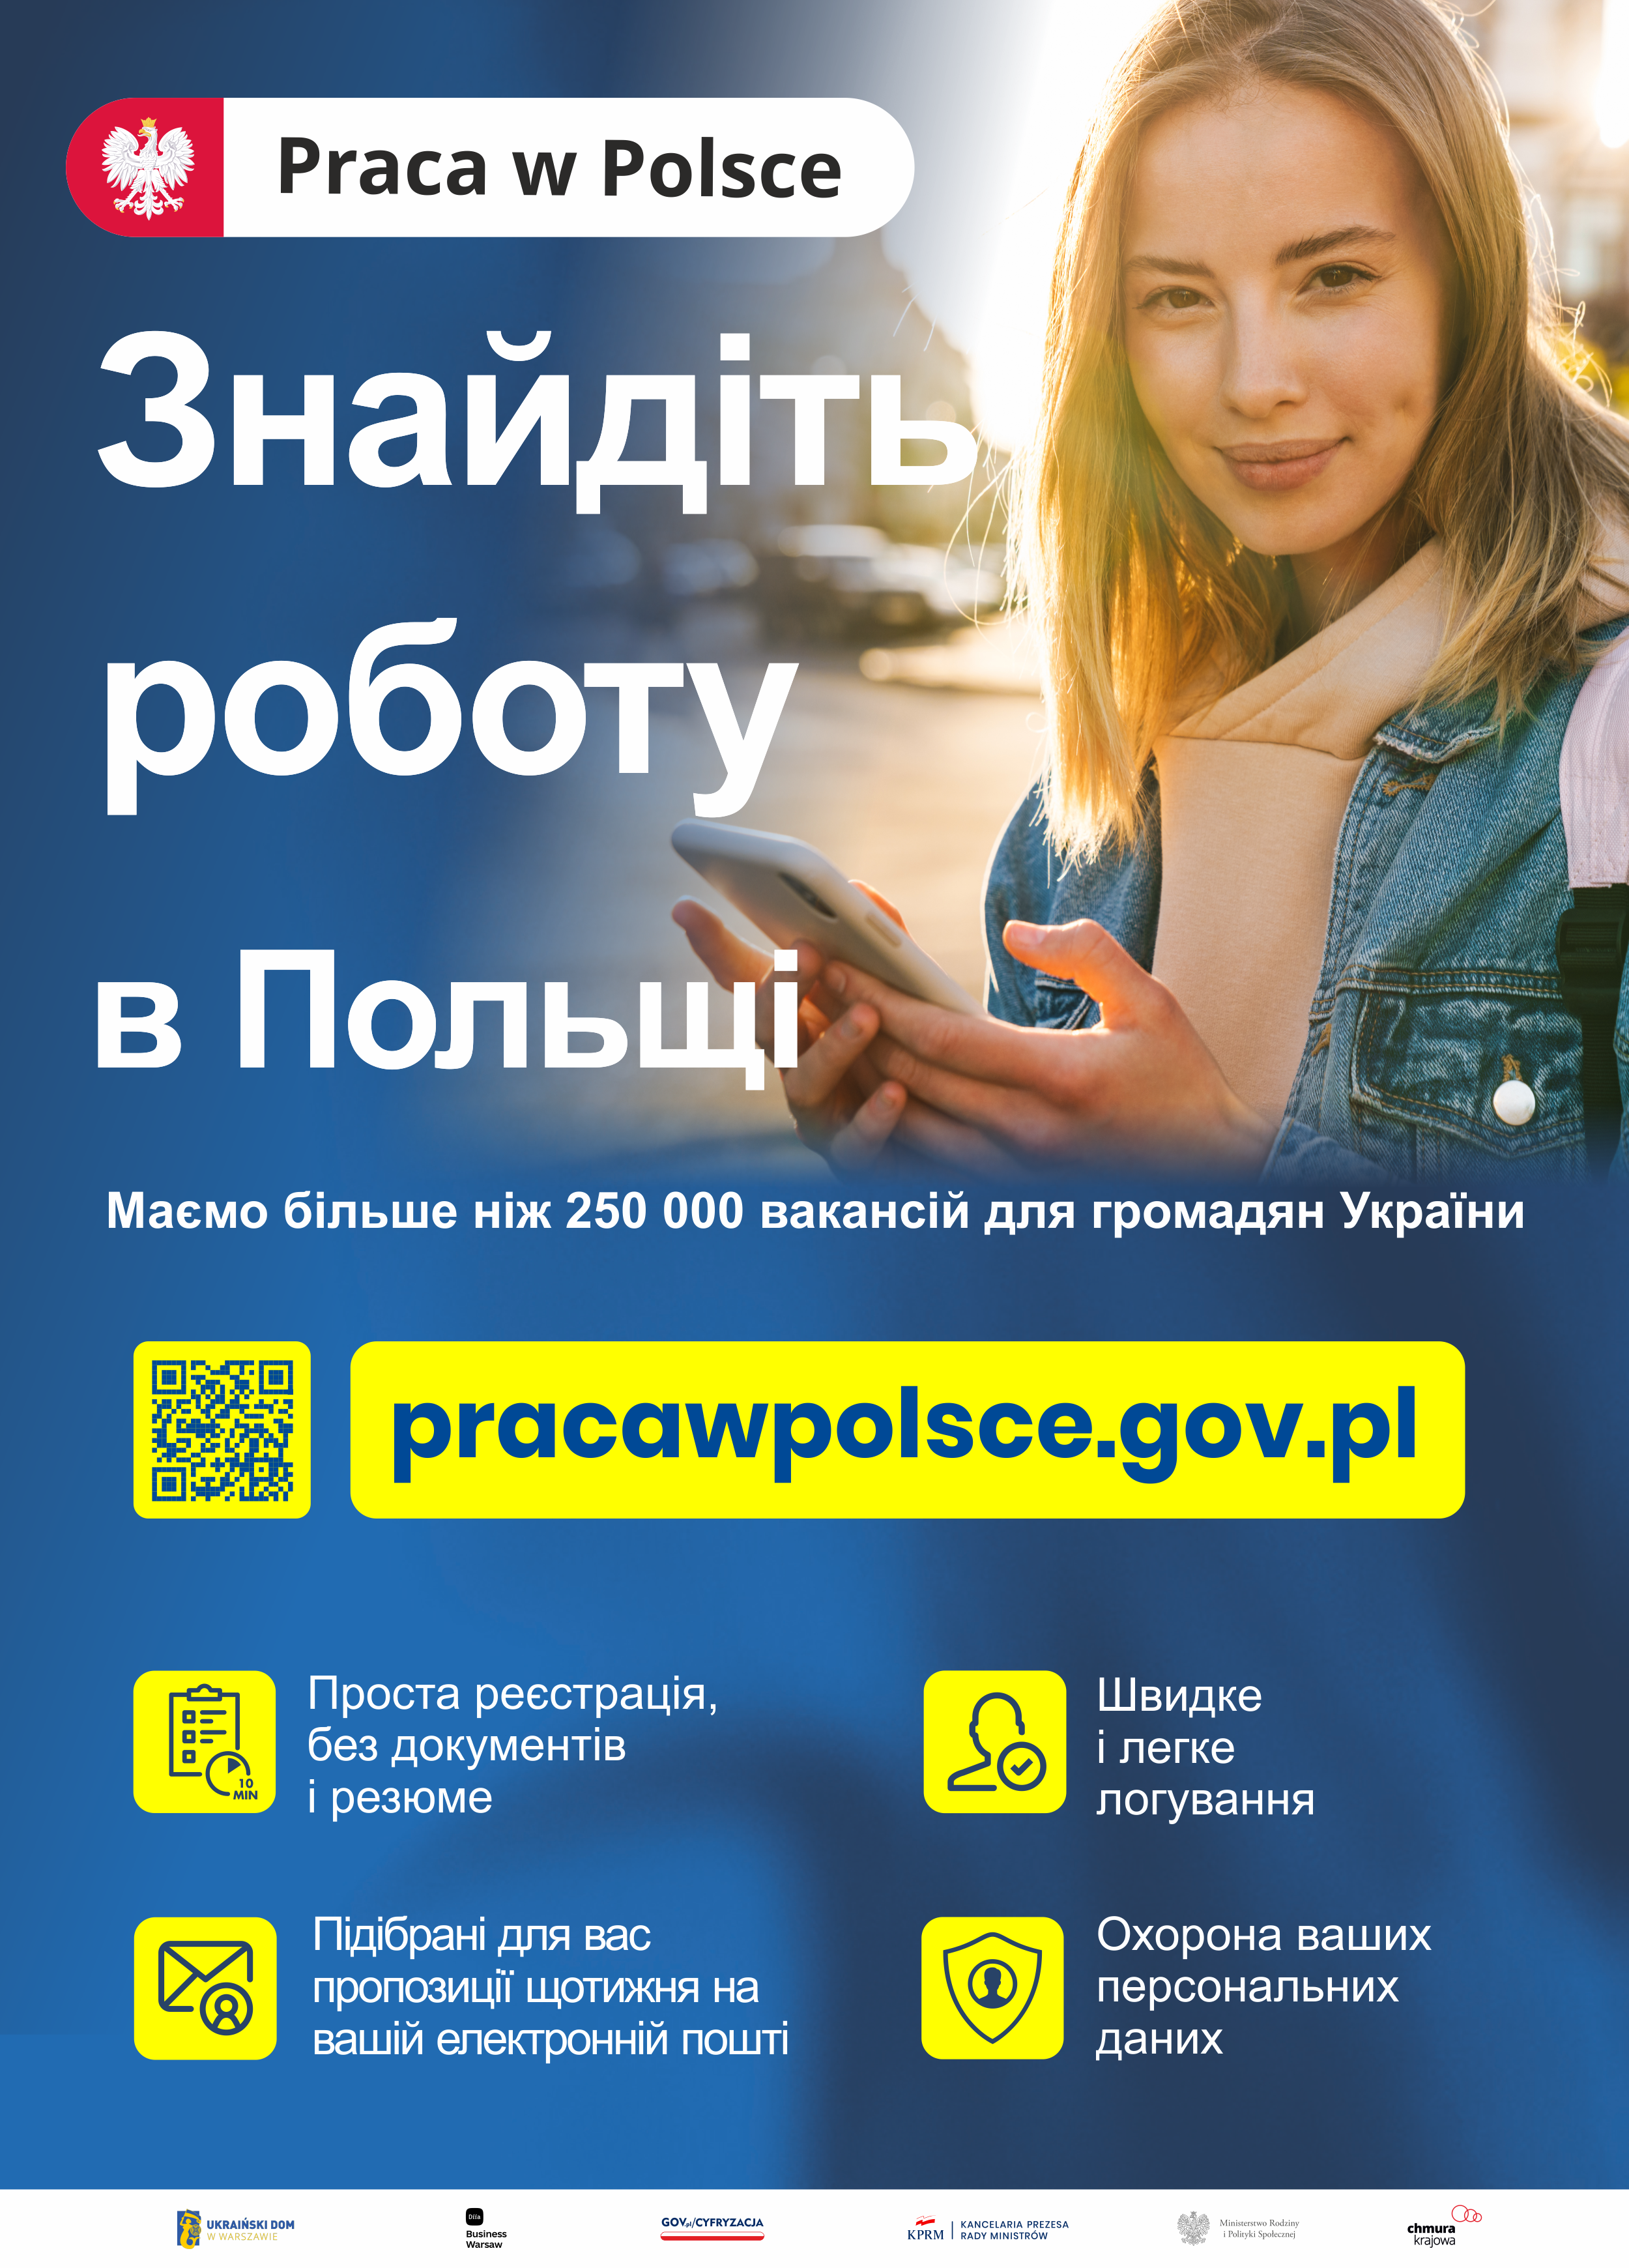 Praca w Polsce - ulotka w języku ukraińskim